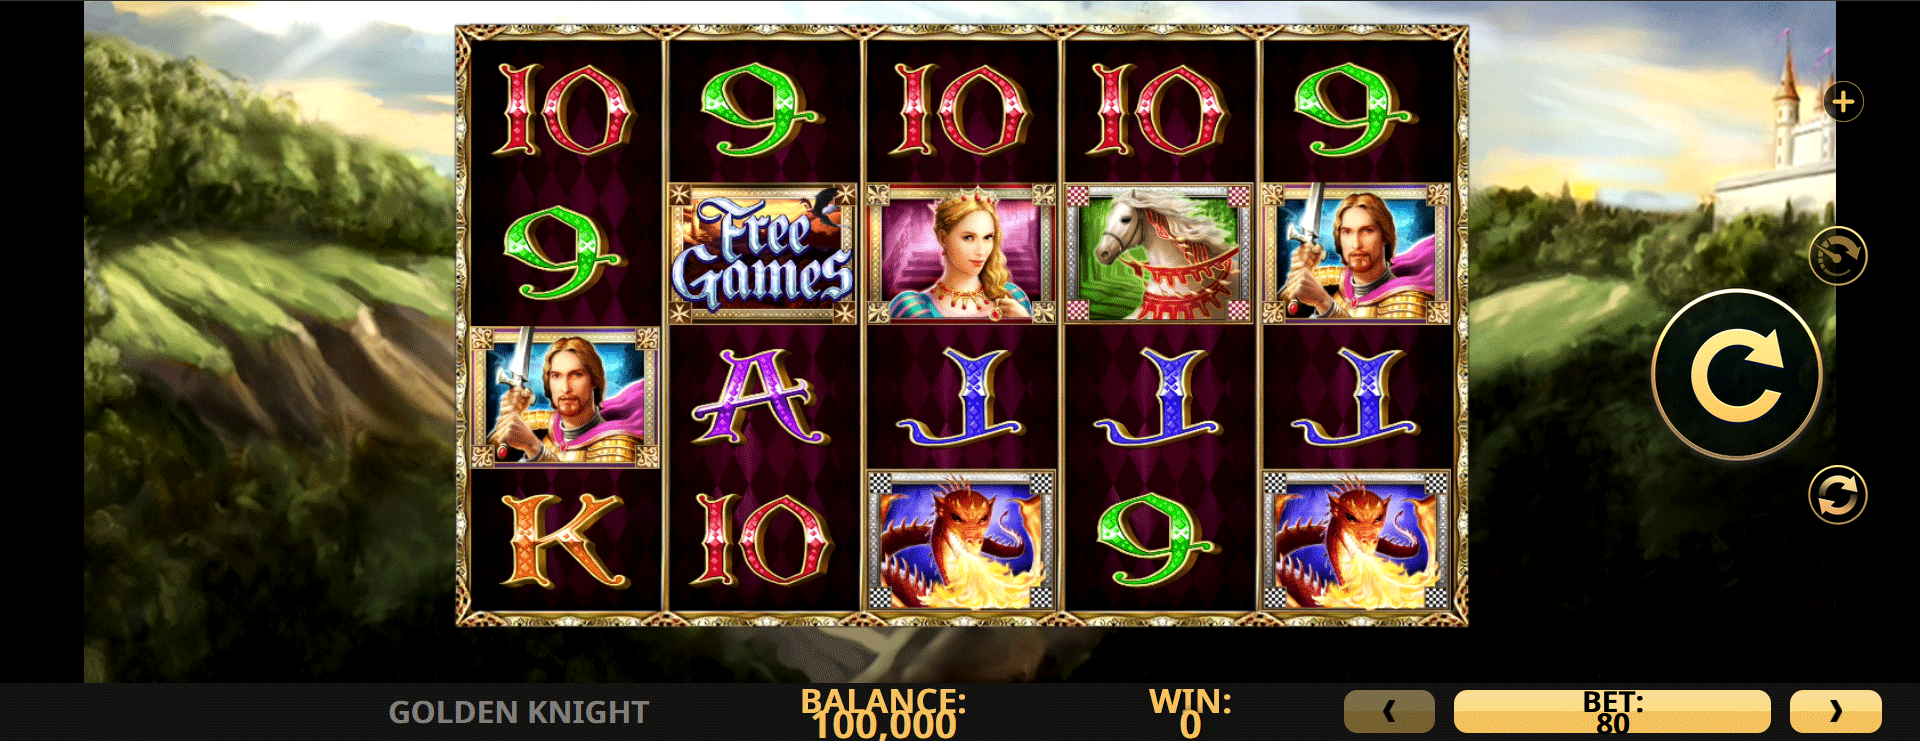 schermata del gioco slot machine golden knight